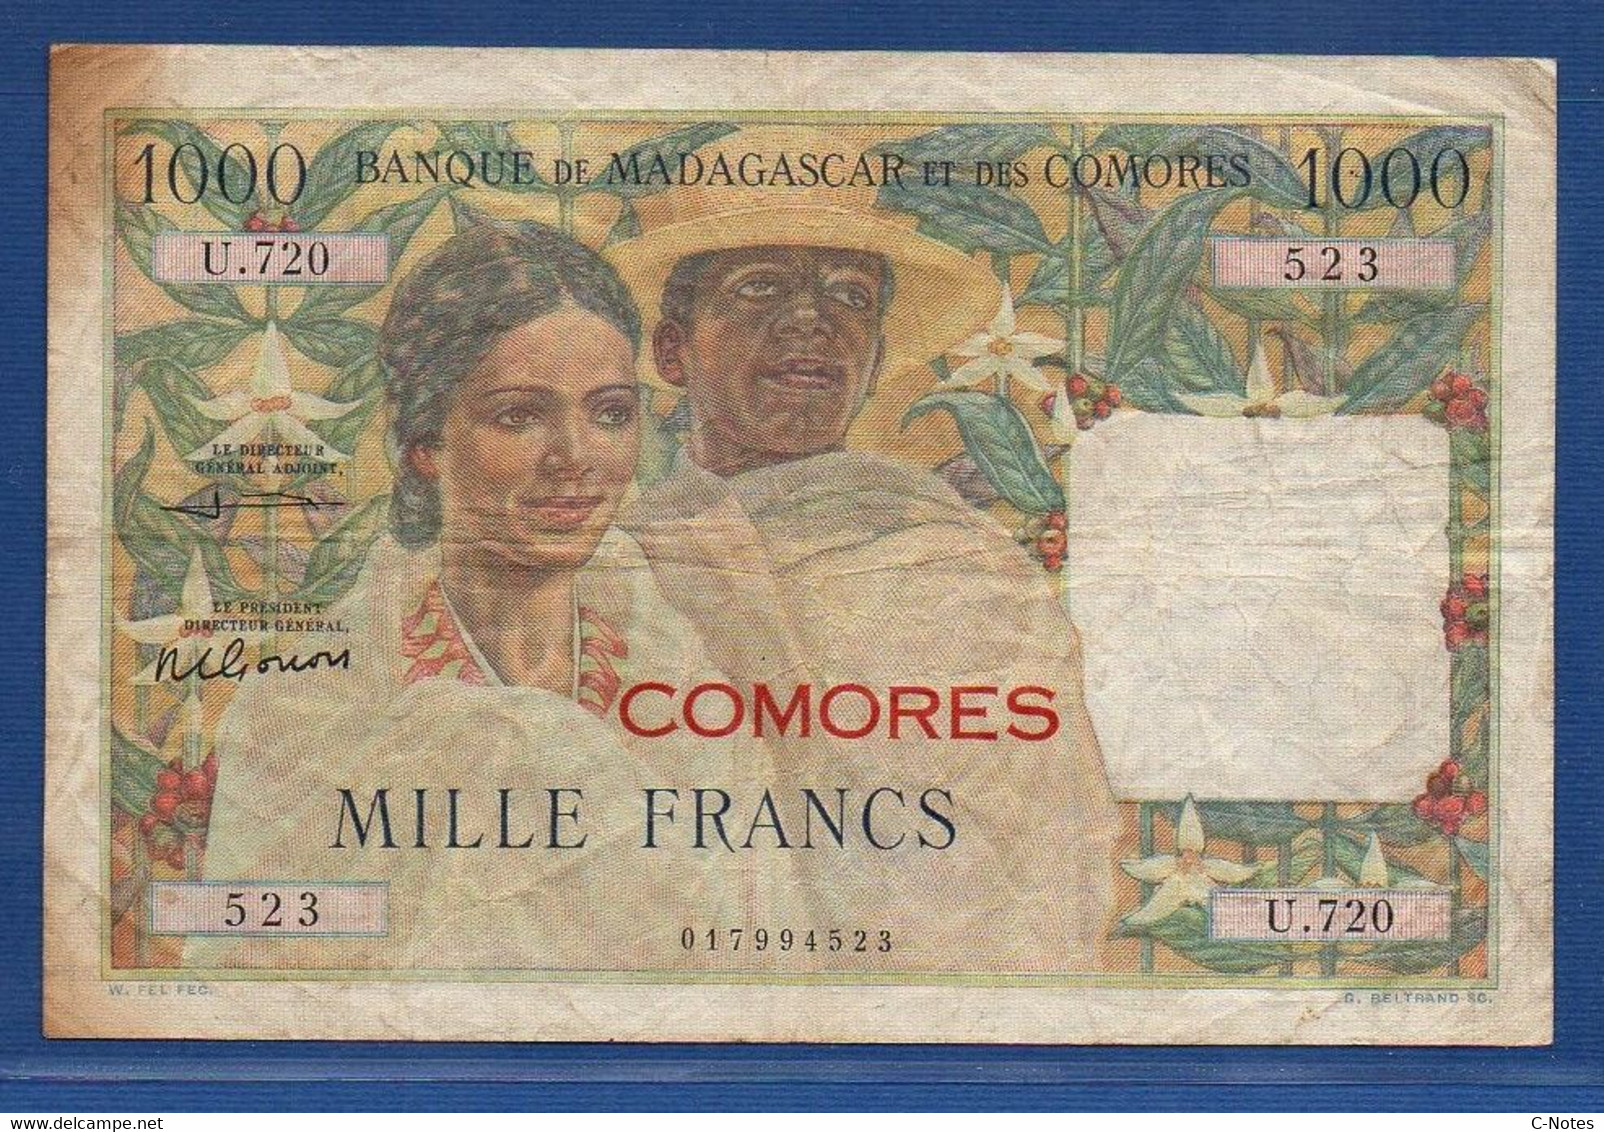 COMOROS - P. 5b2 – 1000 Francs 1963 Circulated / F+, Serie U.720 523 - Comoren